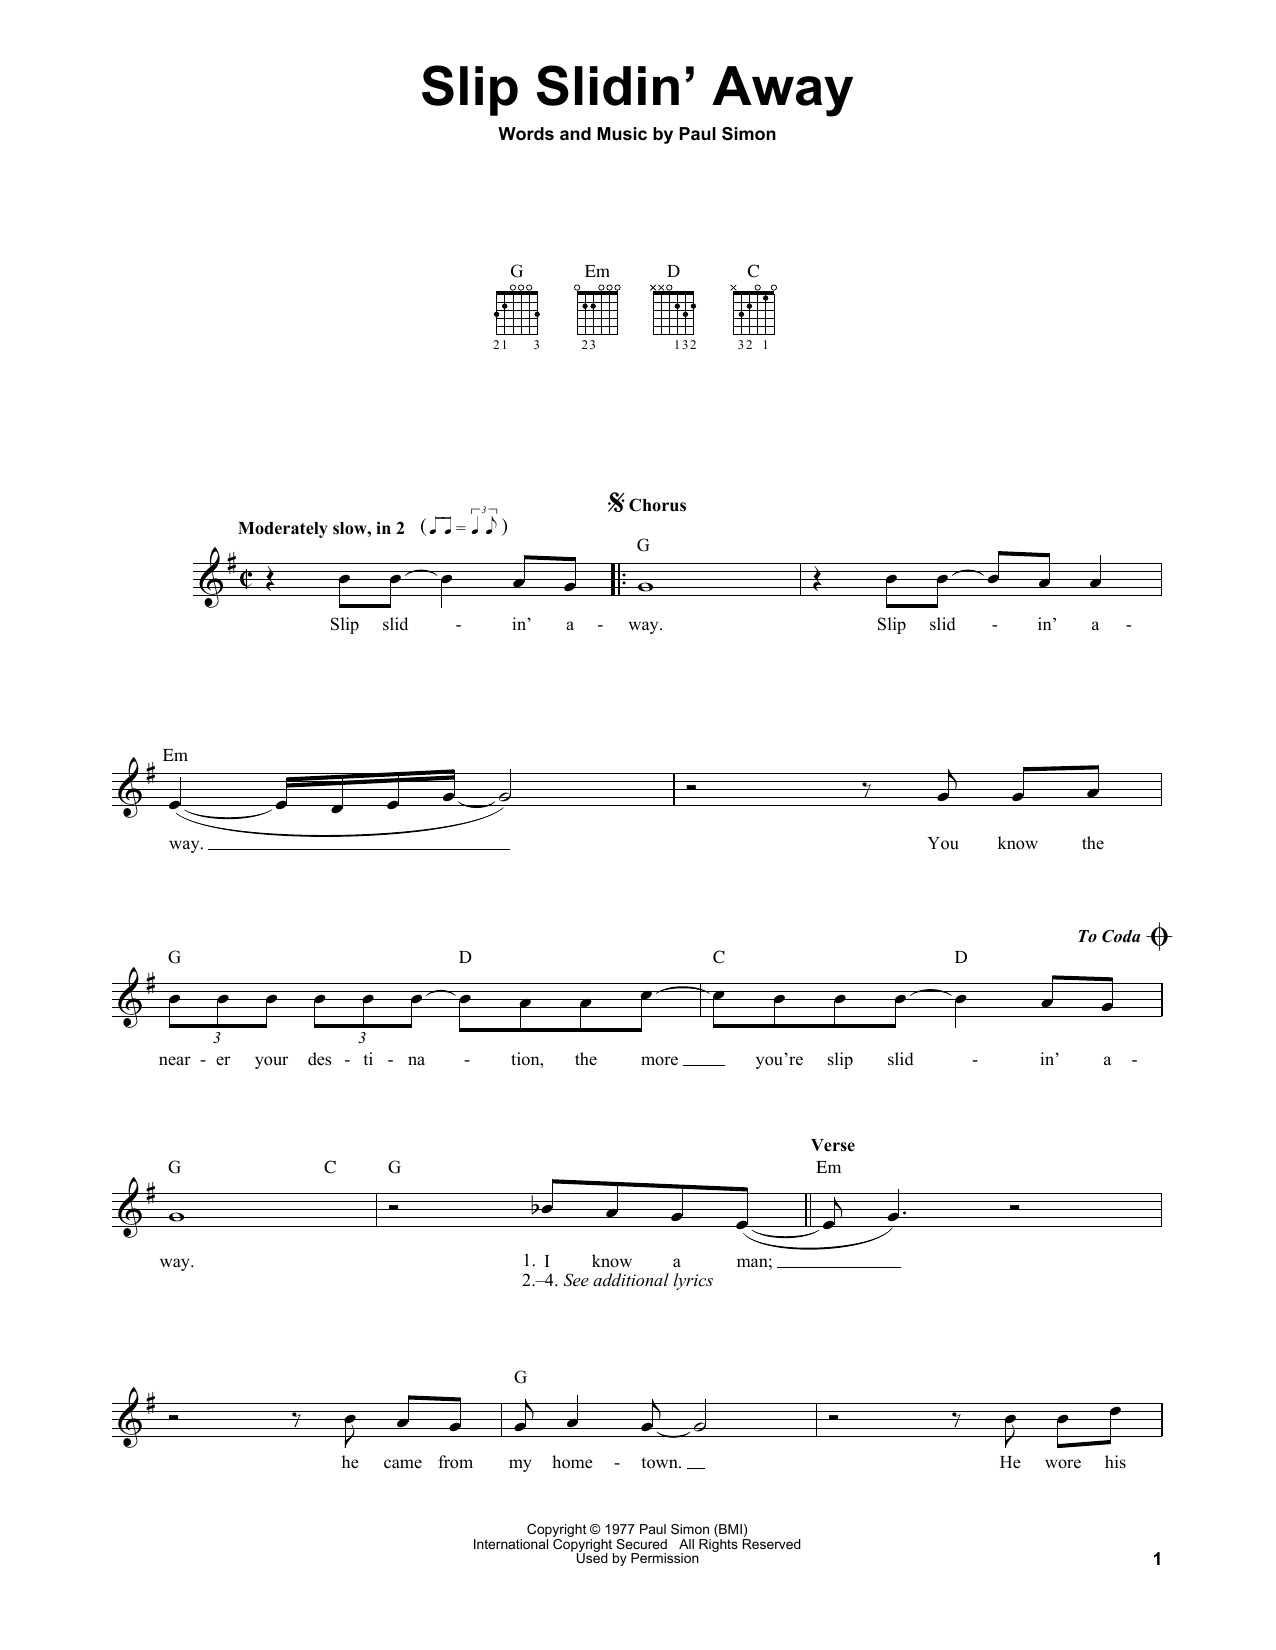 Simon & Garfunkel Slip Slidin' Away Sheet Music Notes & Chords for Easy Guitar - Download or Print PDF